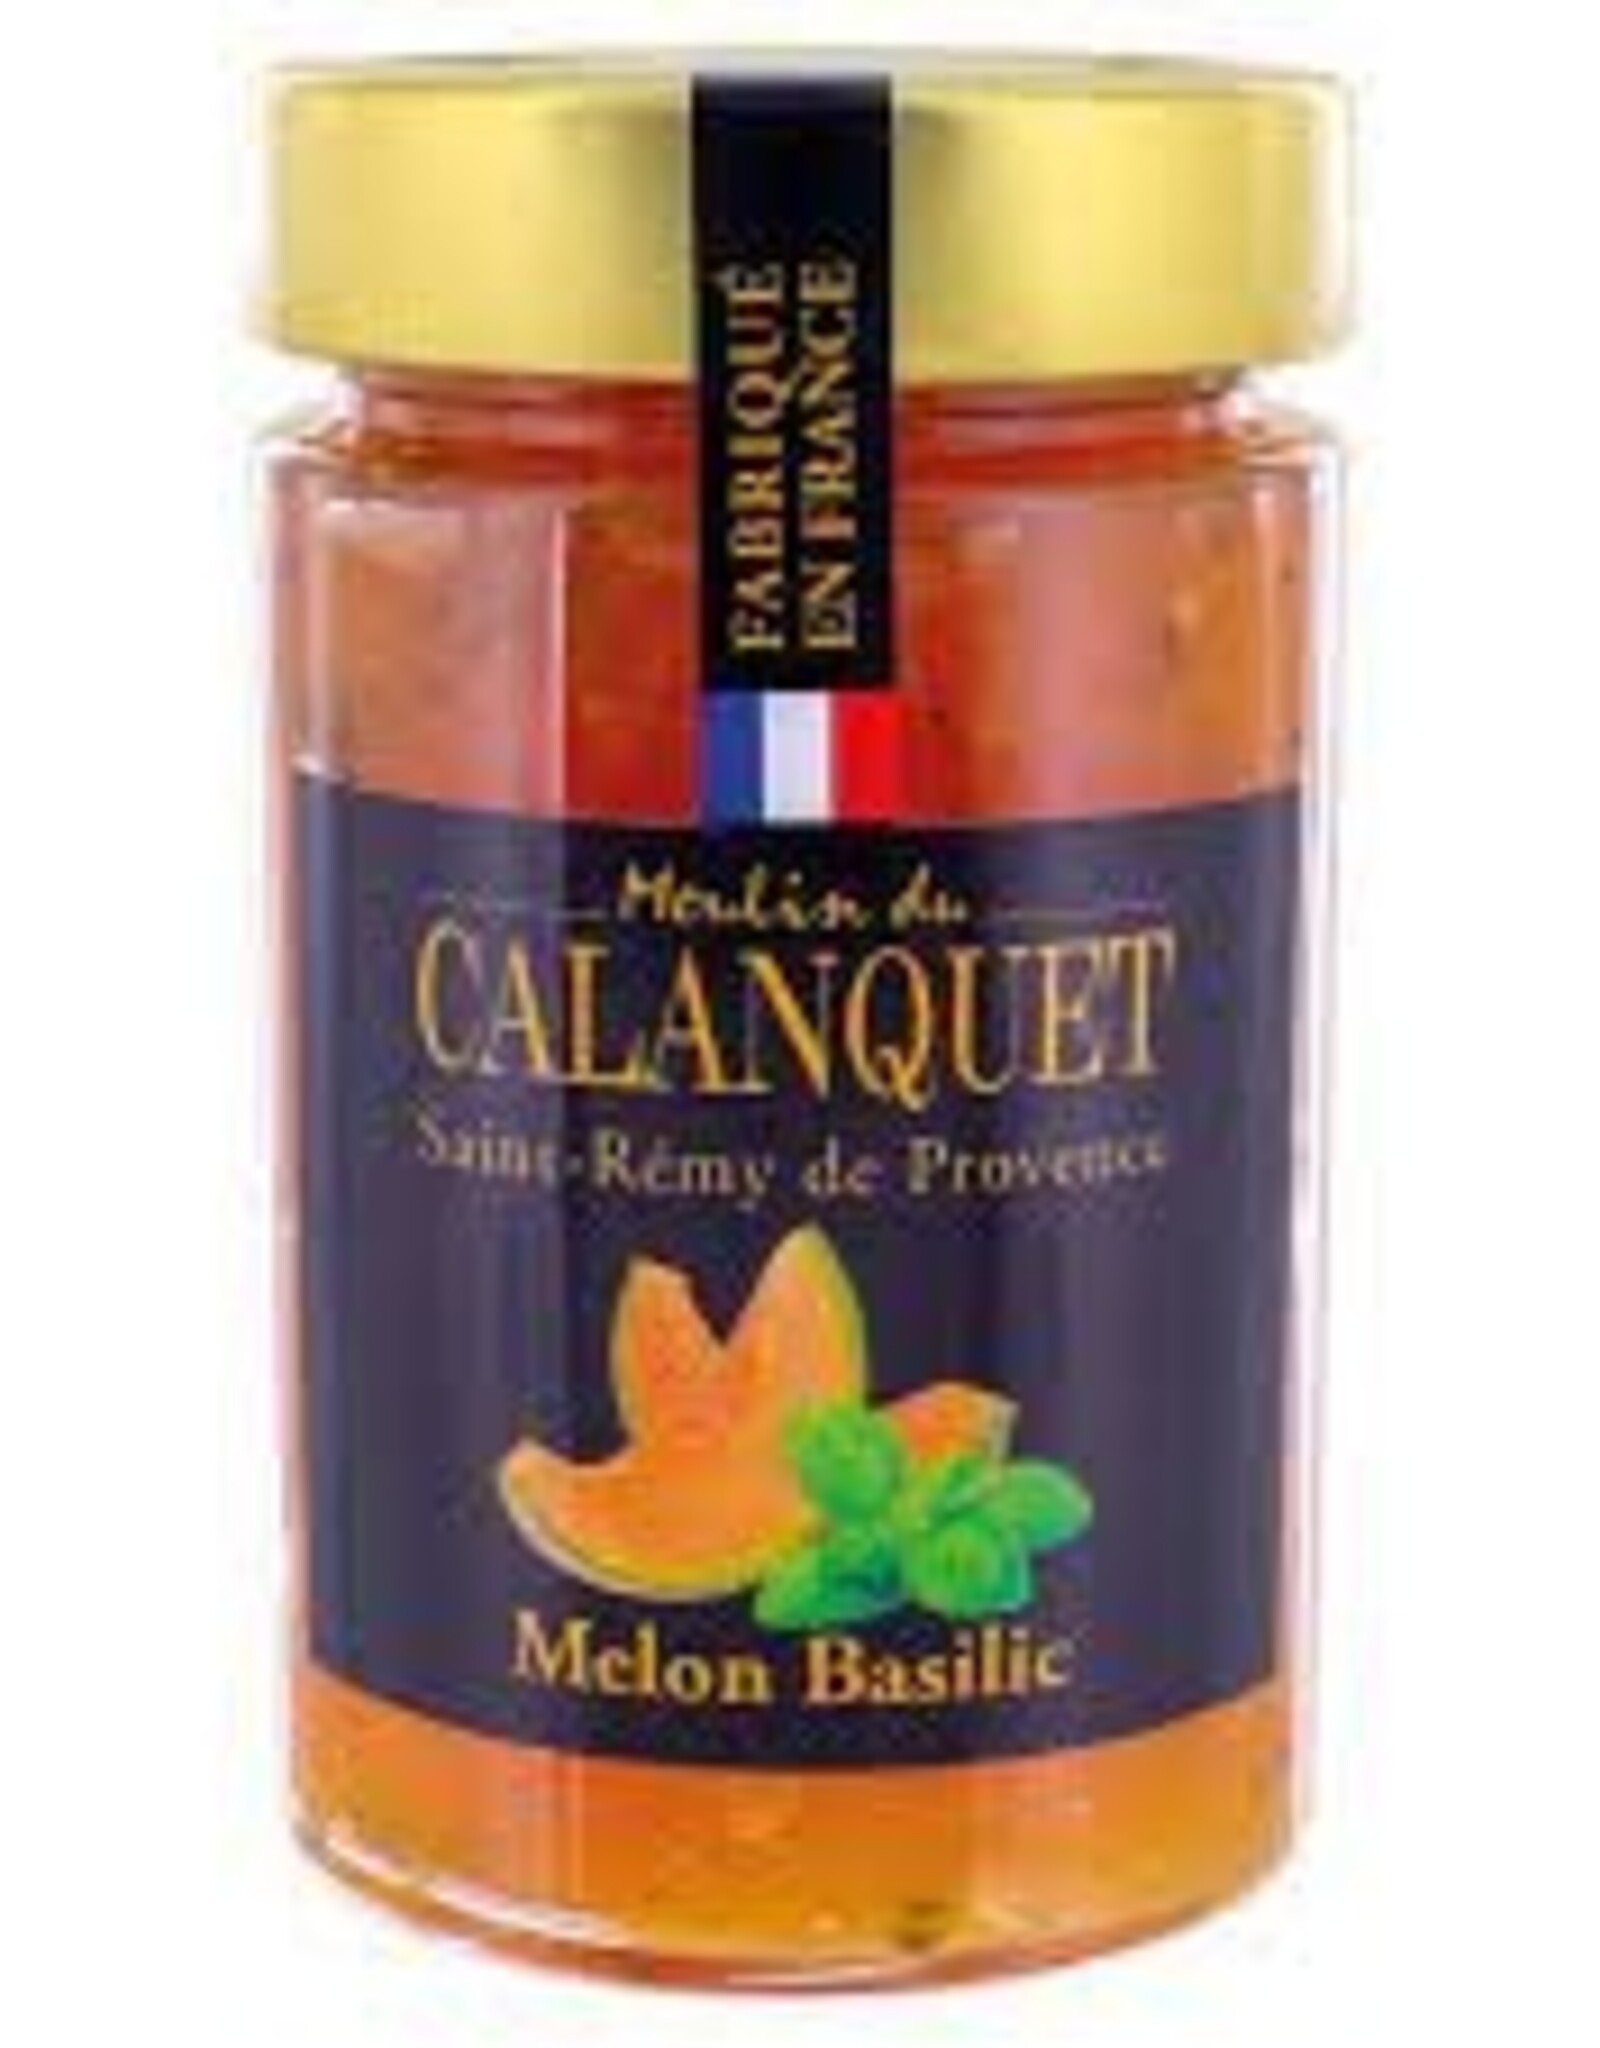 Moulin du Calanquet Confiture Melon Basilic / Melon & Basilic Jam 220 g